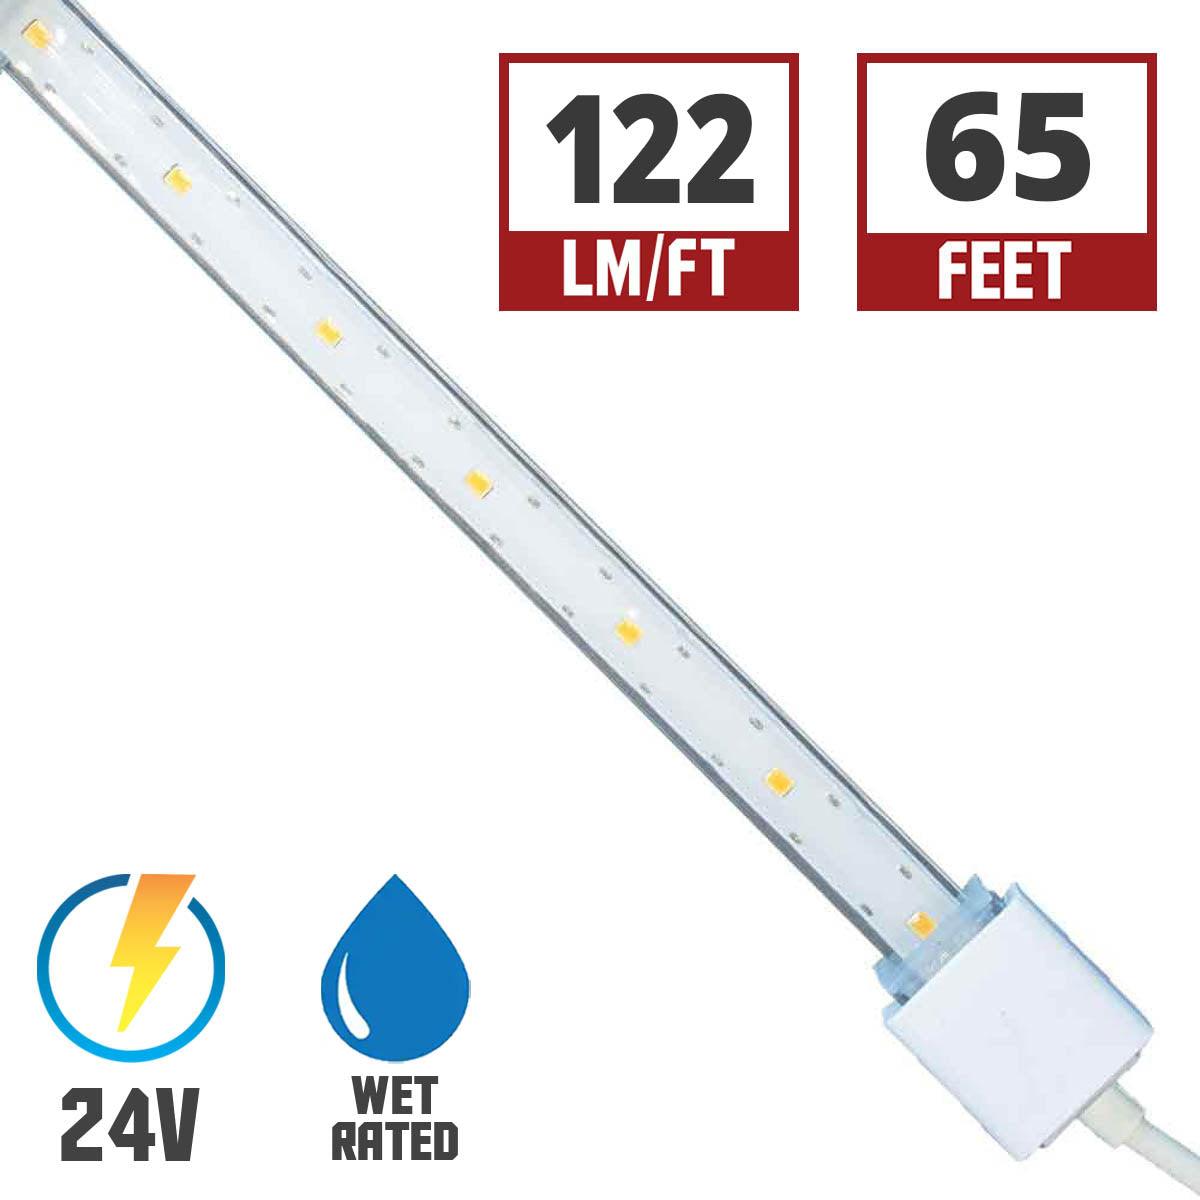 Hydrolume Slim Wet Location LED Tape Light, 65ft Reel, 120 Lumens per Ft, 24V